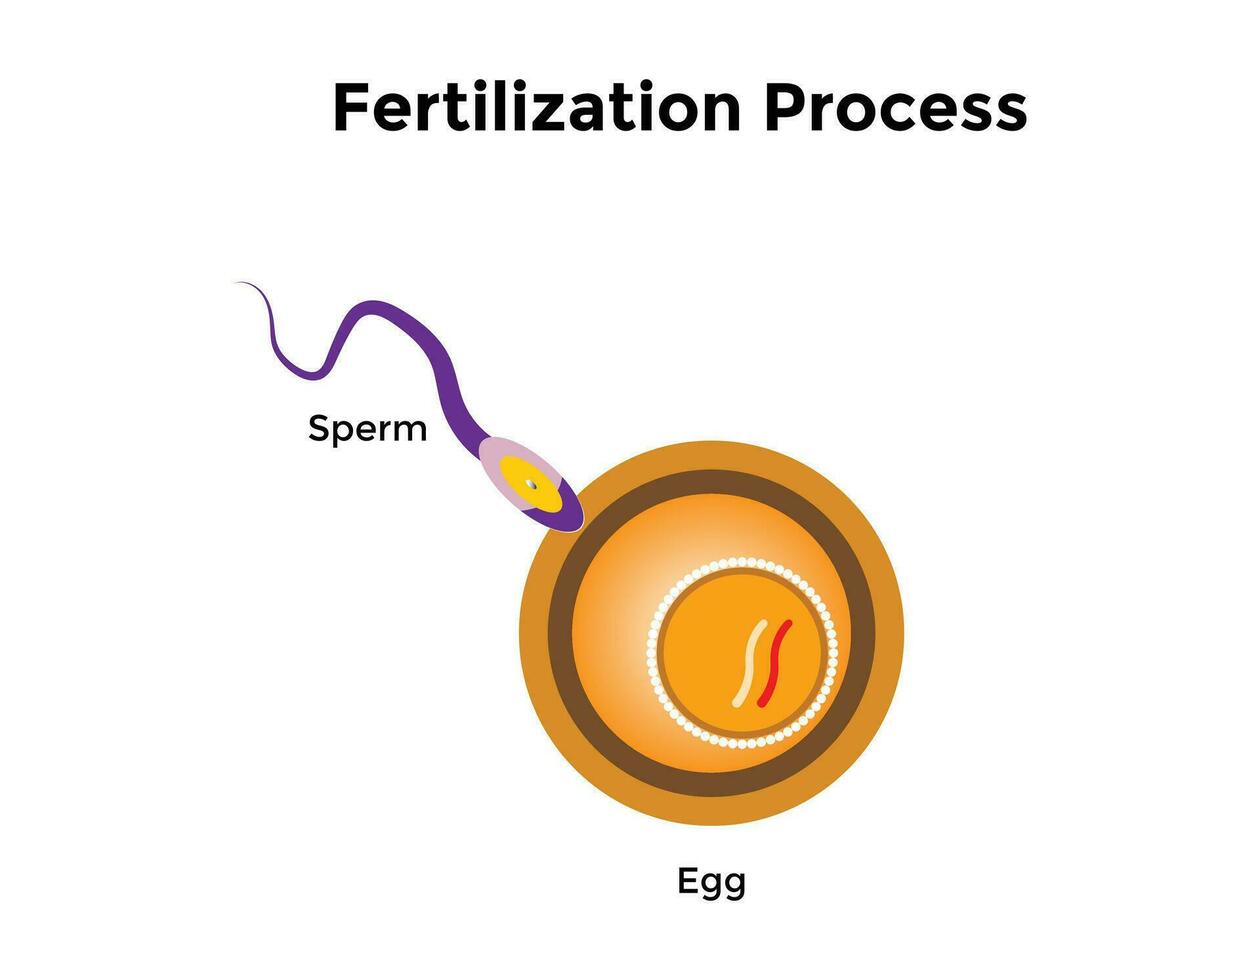 Humain fertilisation est le syndicat de une Humain Oeuf et sperme vecteur